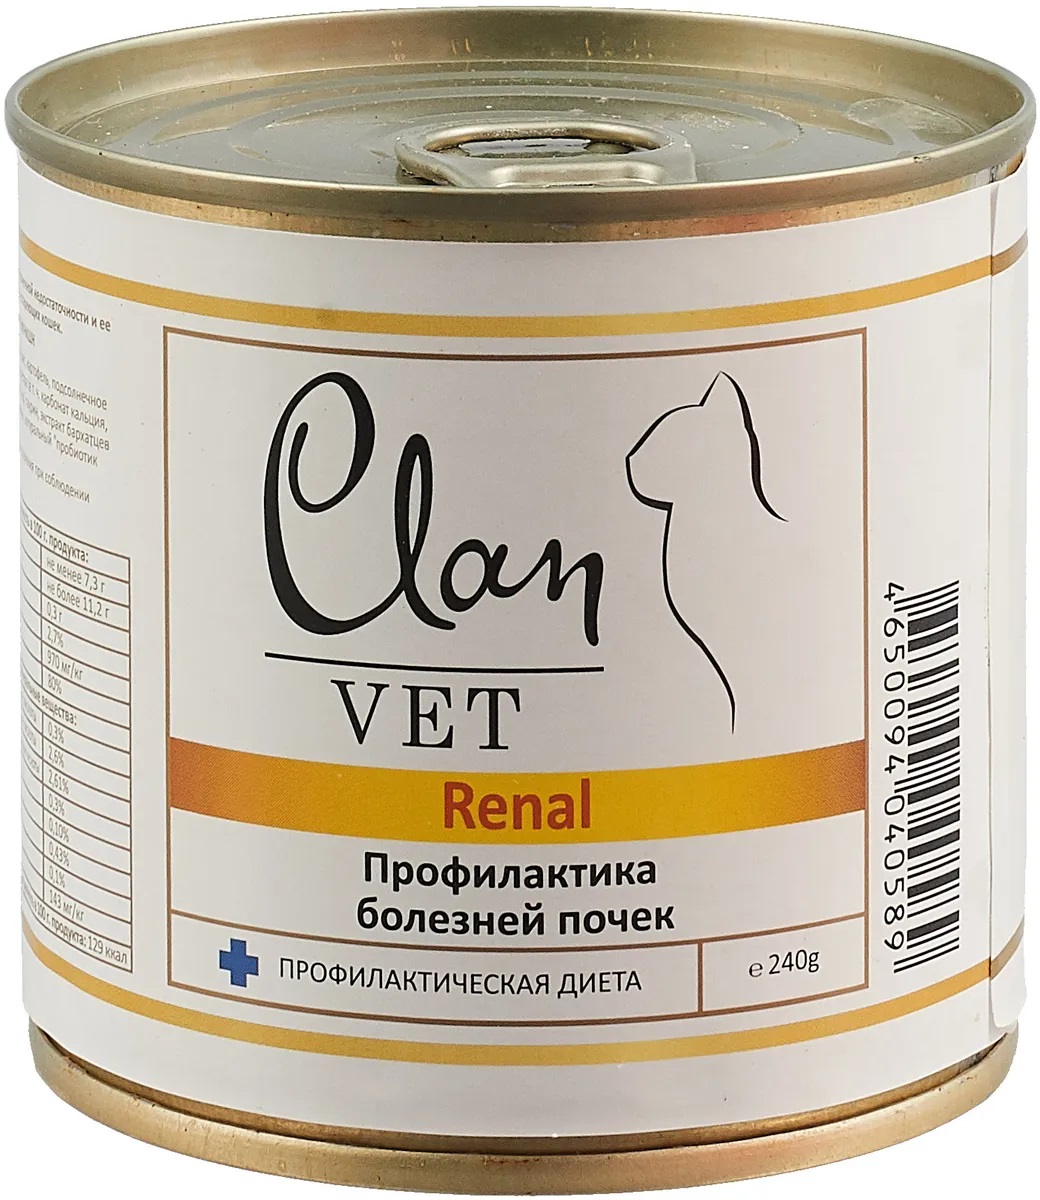 Корм для кошек Clan vet renal профилактика болезней почек 240 г бан.